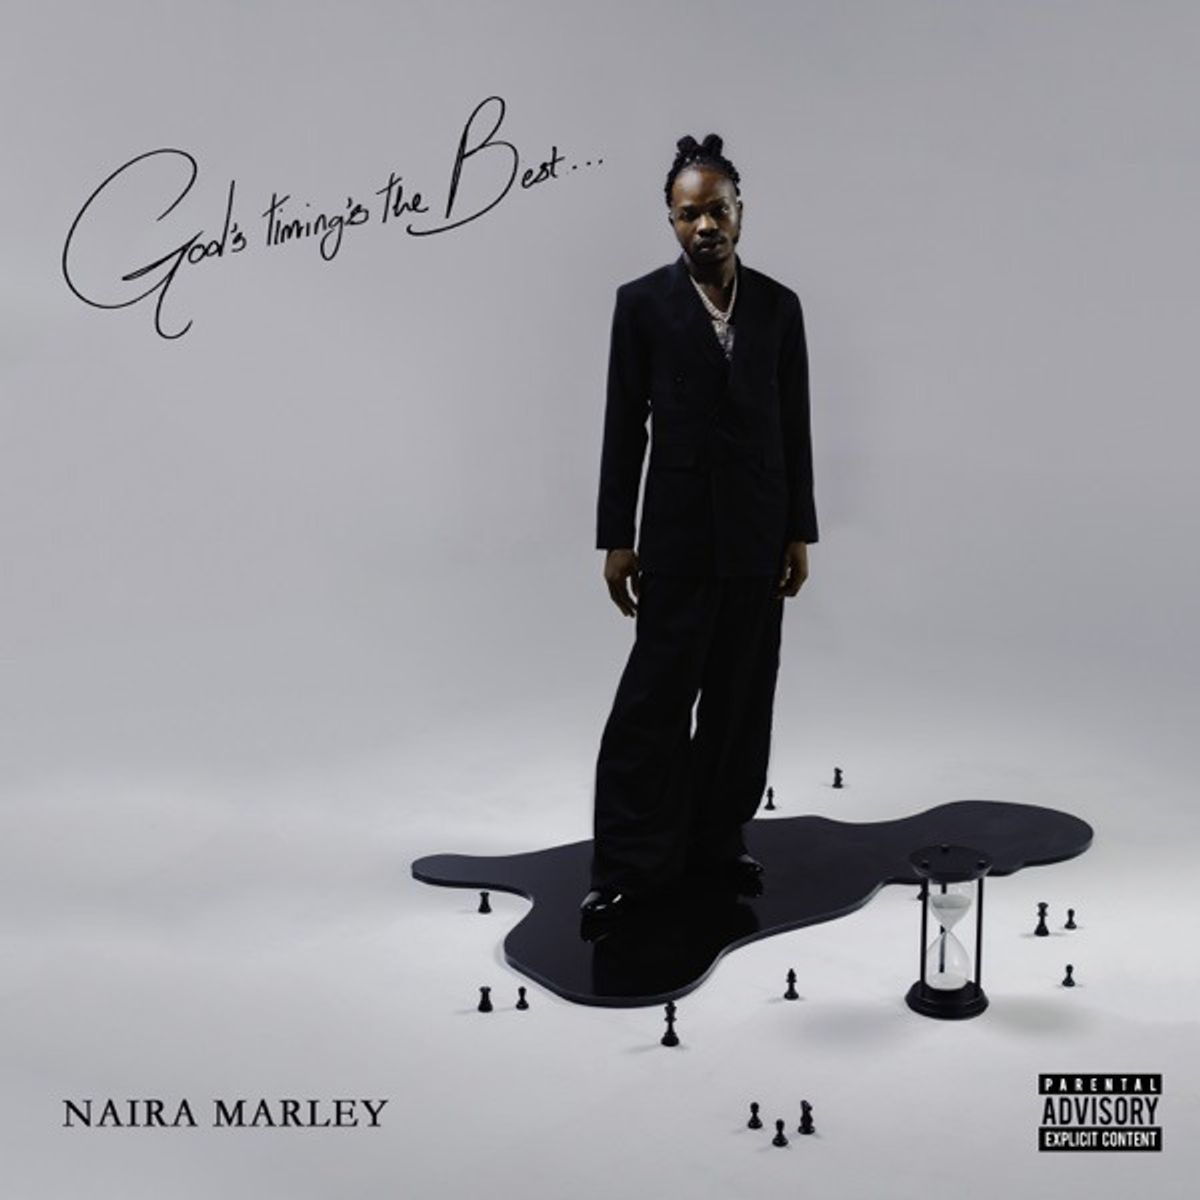 Naira Marley - God’s Timing’s the Best (Full ALBUM)